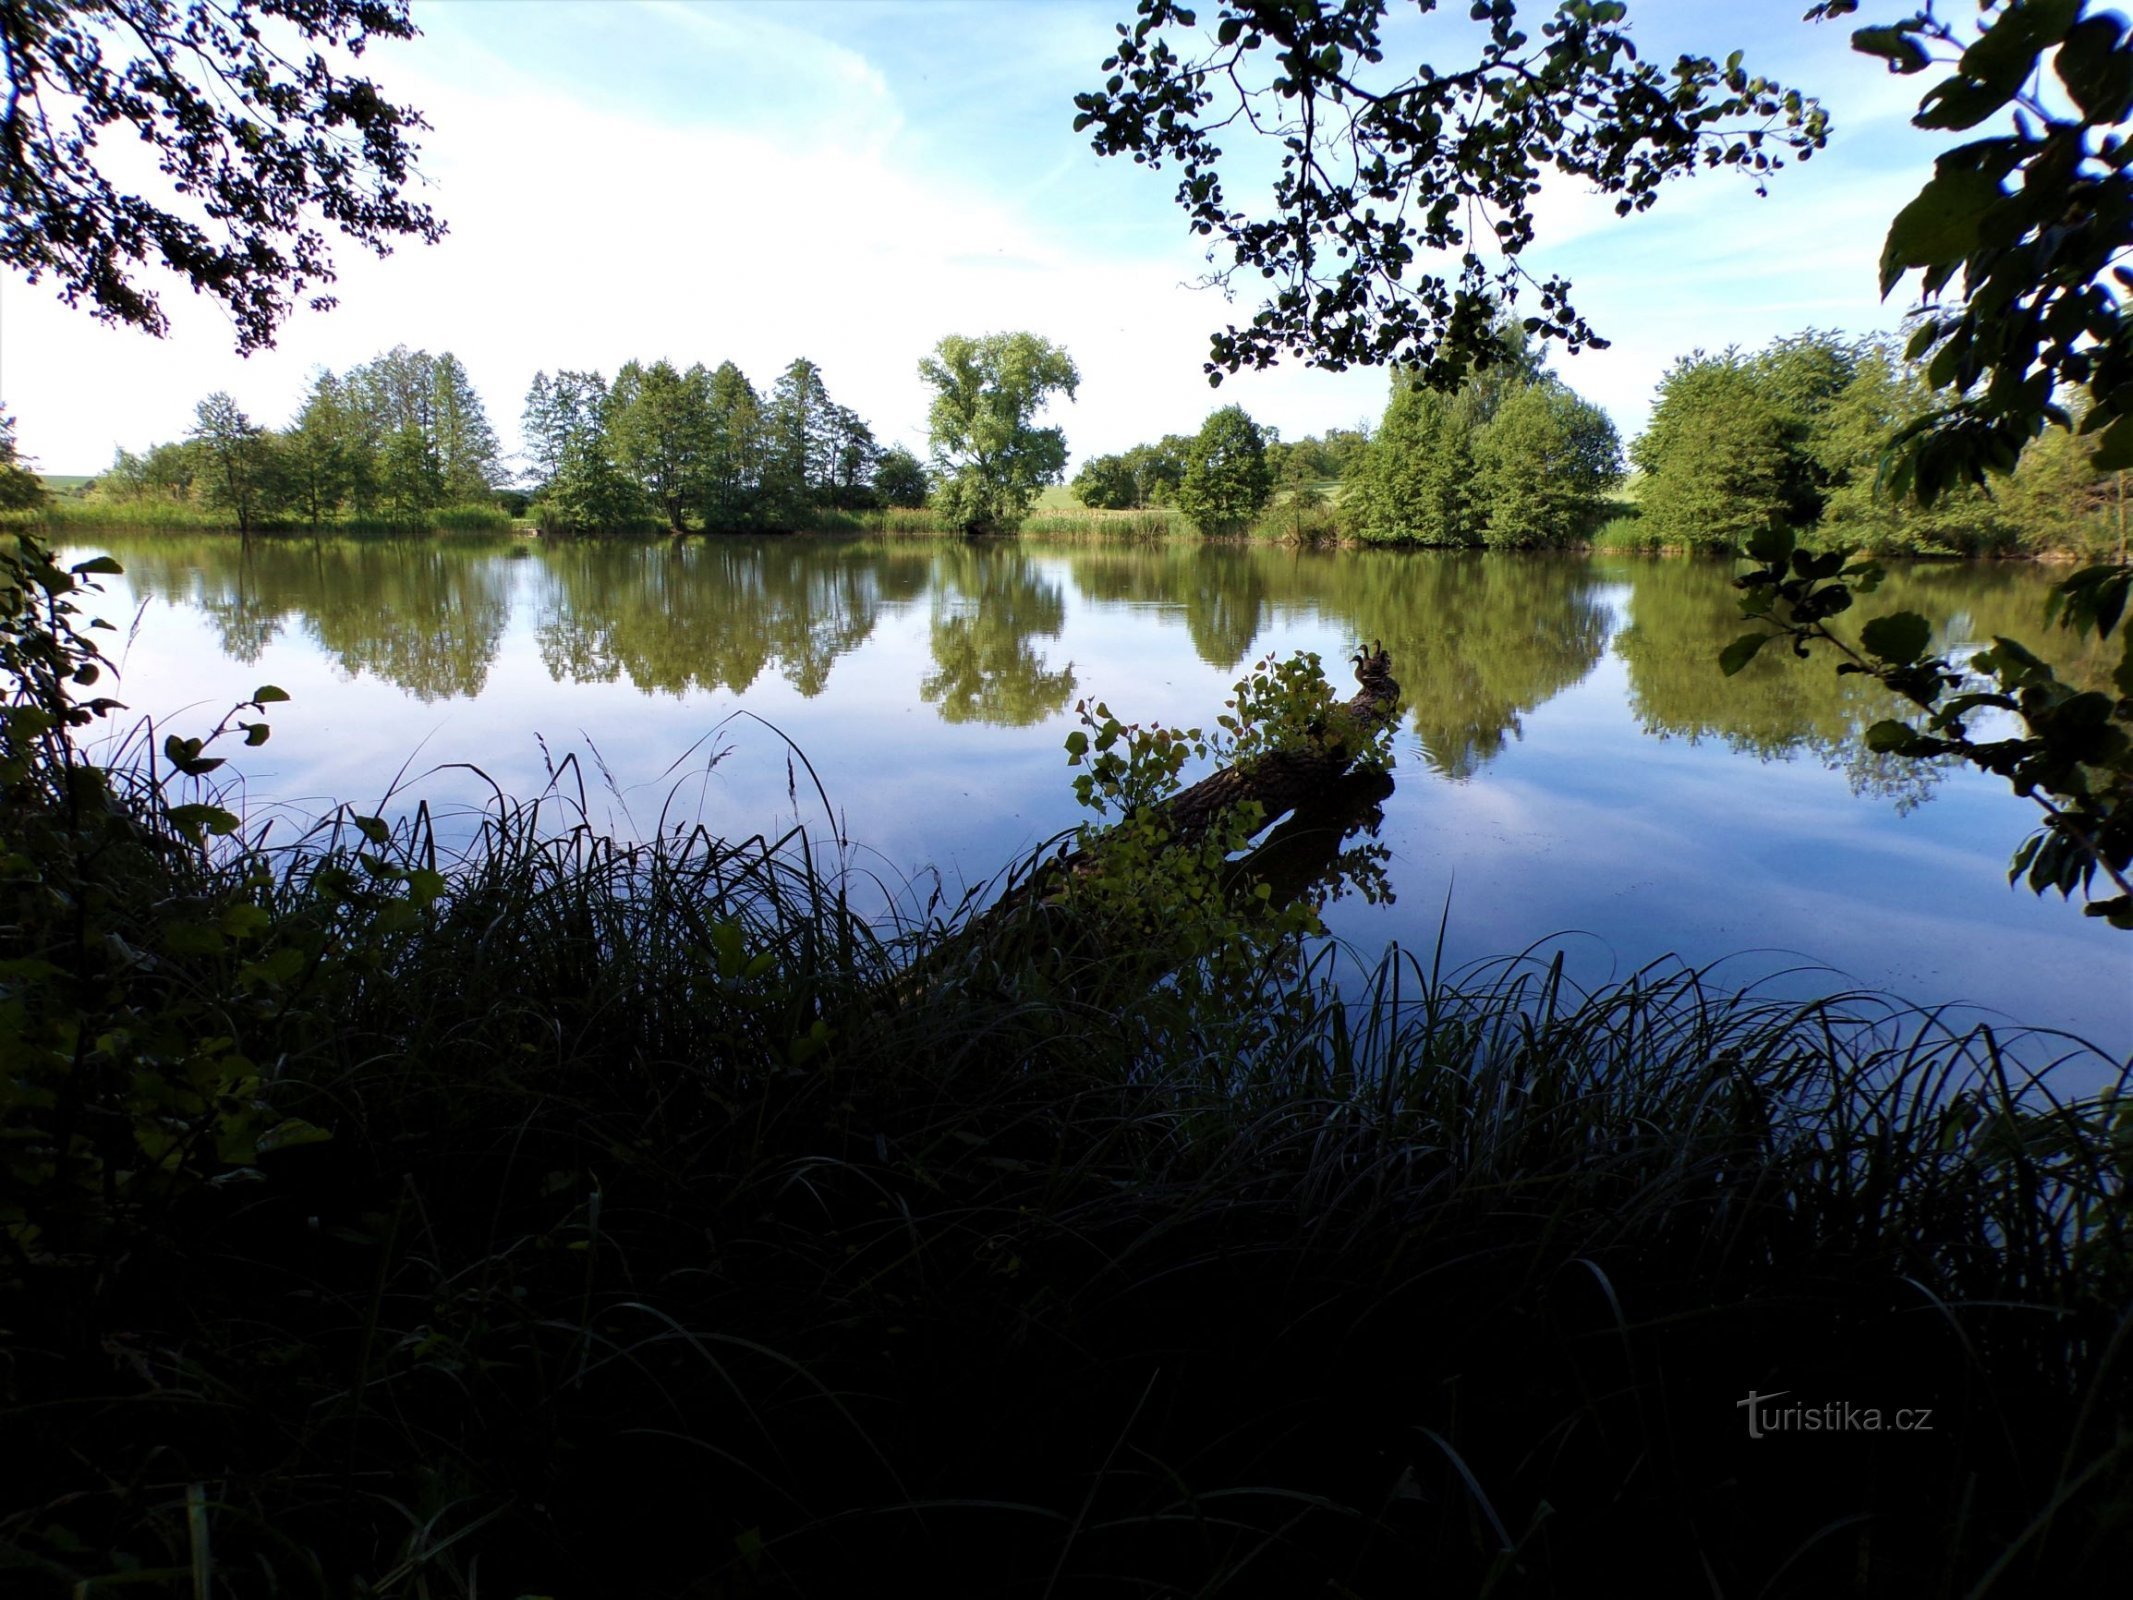 Pavlovský rybník (Jeníkovice, 15.6.2021)